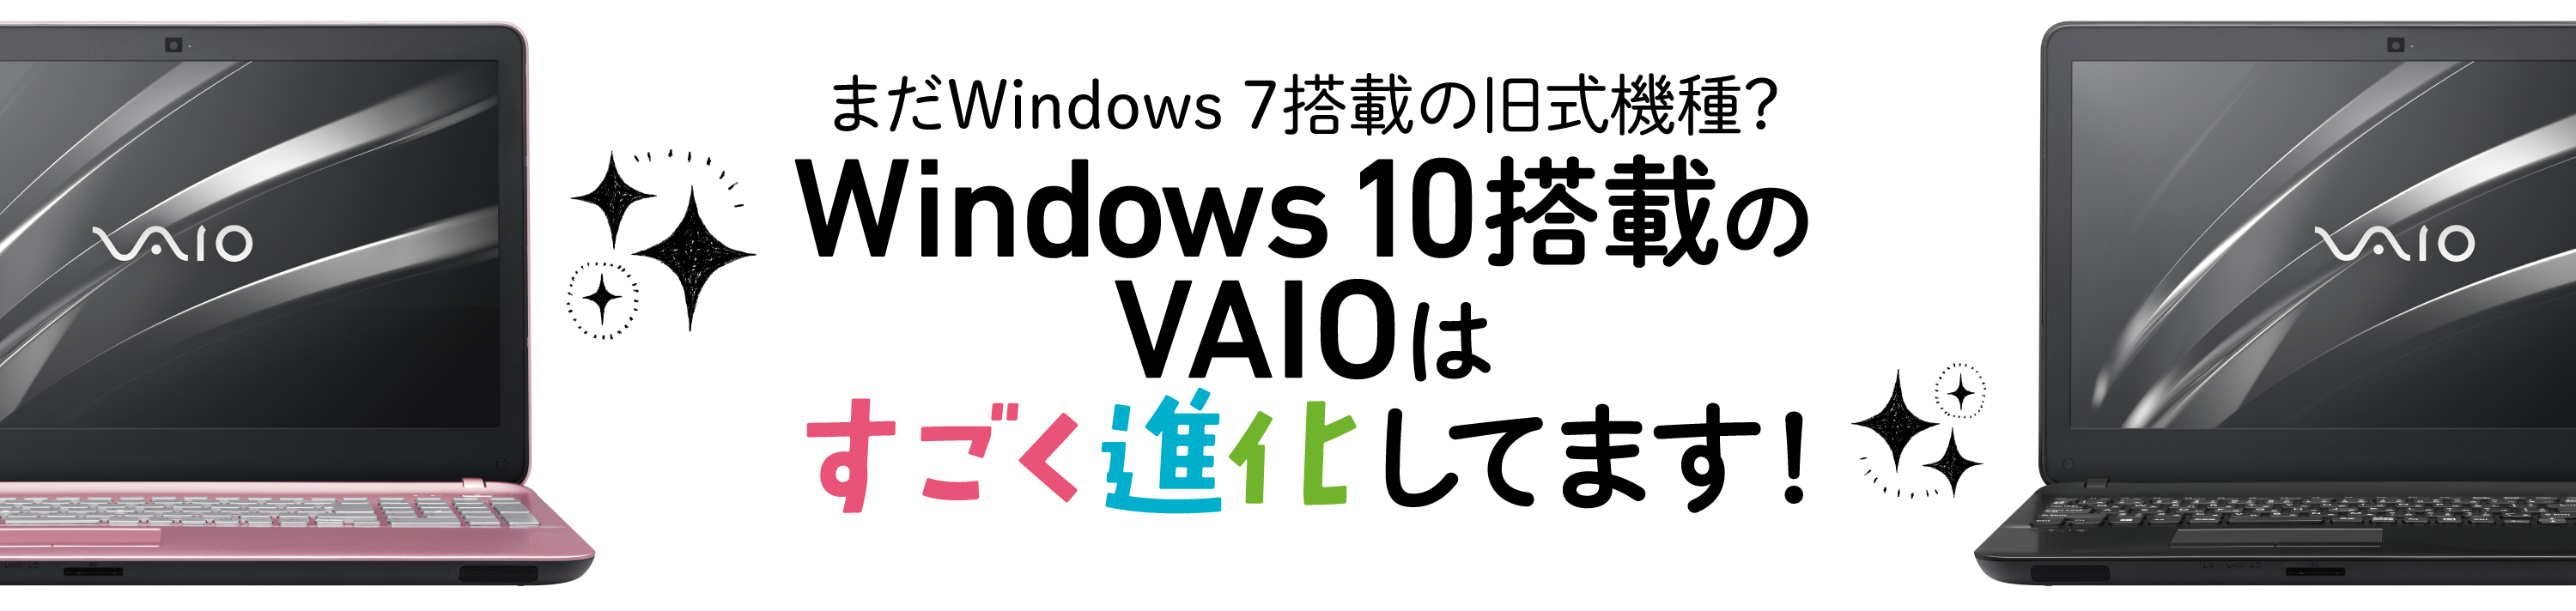 まだWindows７搭載の旧式機種？Windows 10 搭載のVAIOはすごく進化しています！